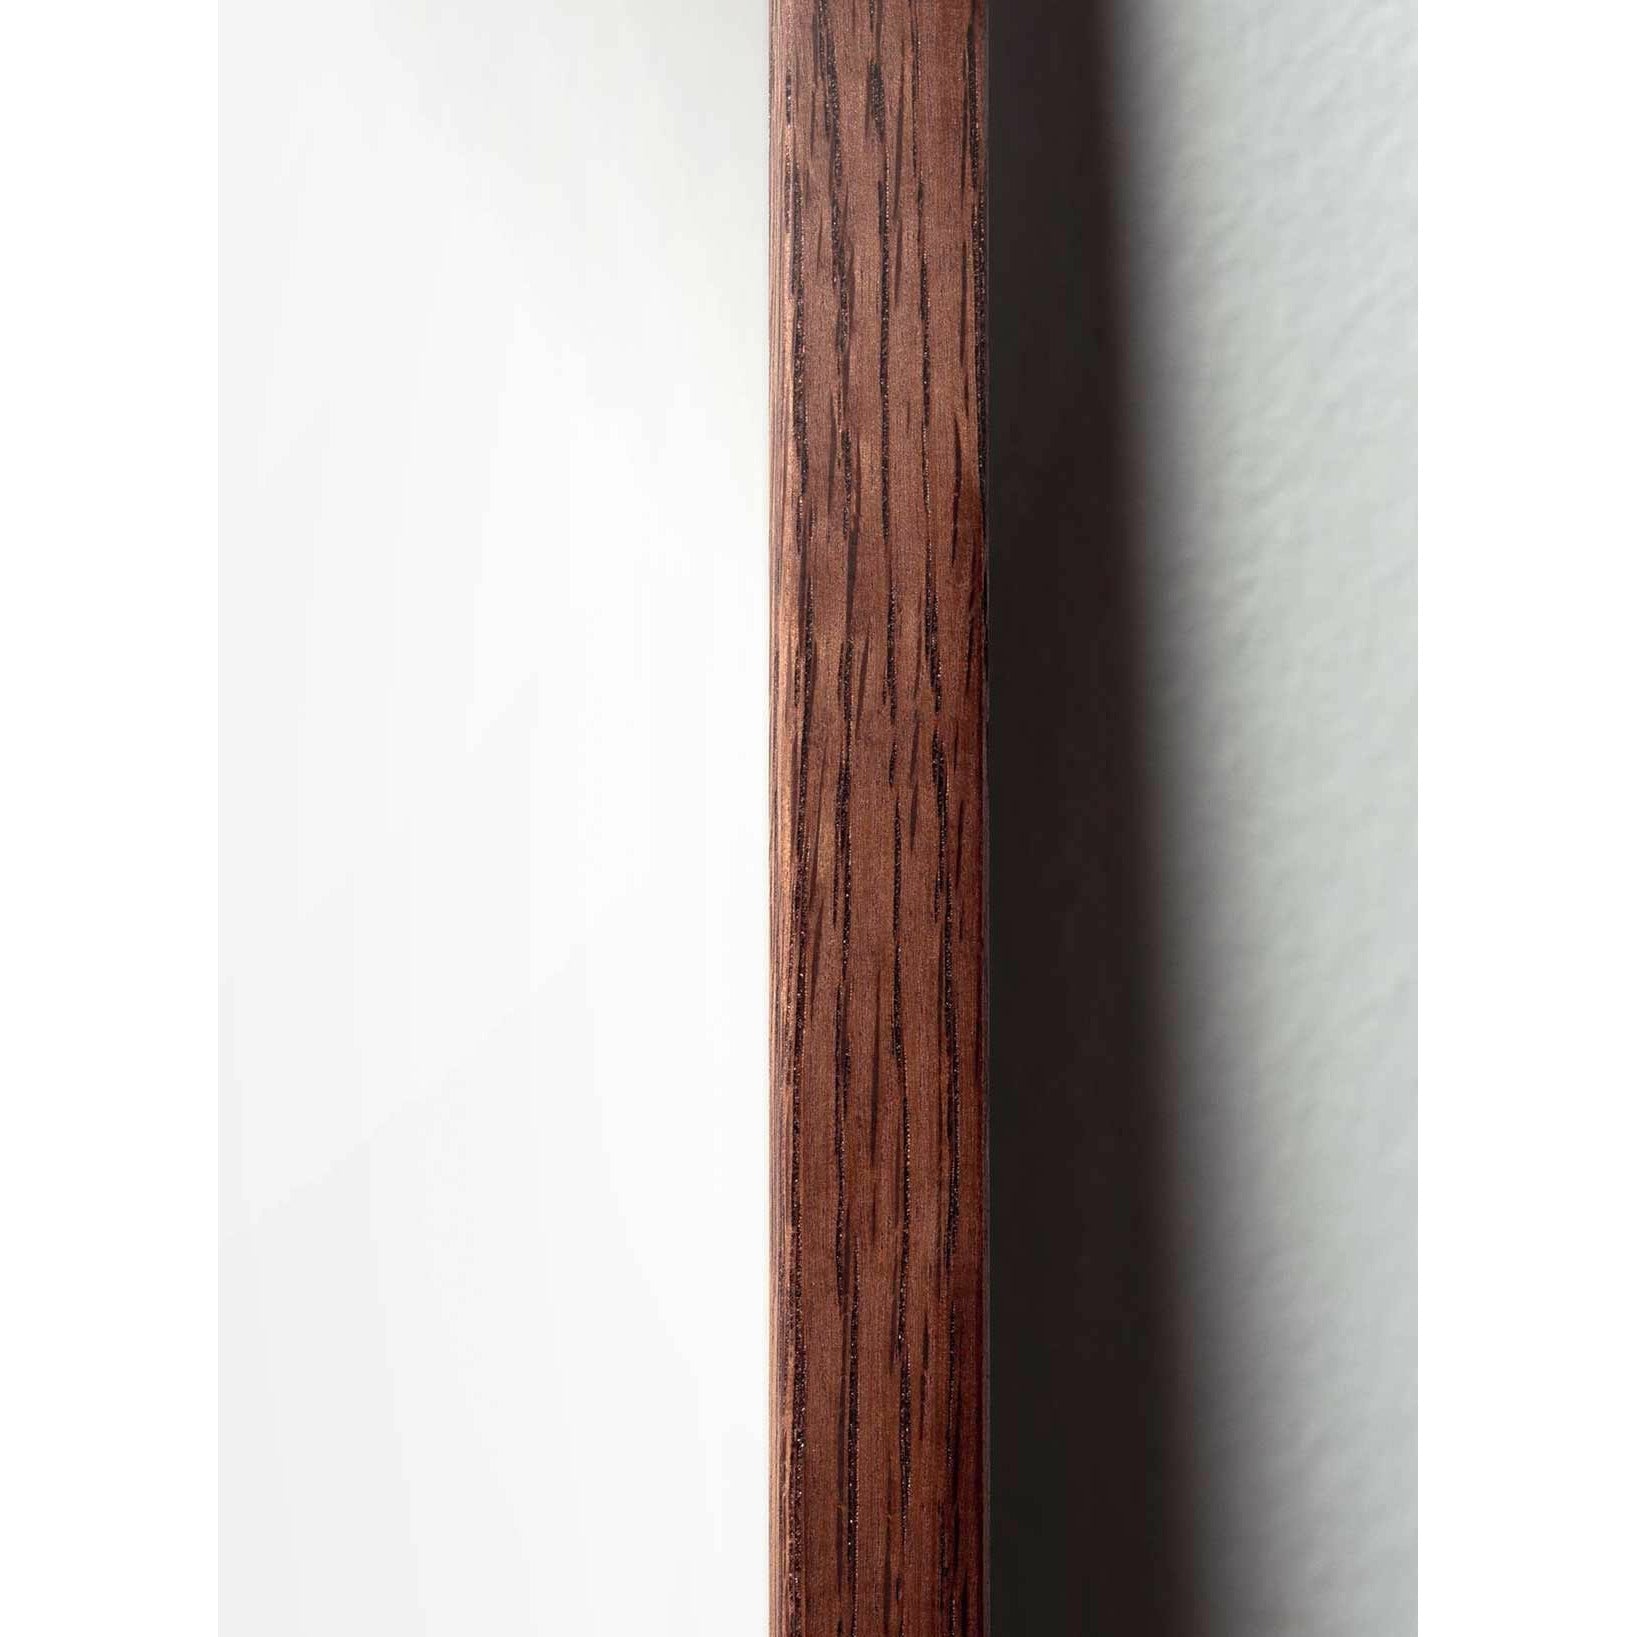 Póster clásico de huevo de creación, marco hecho de madera oscura de 30x40 cm, fondo negro